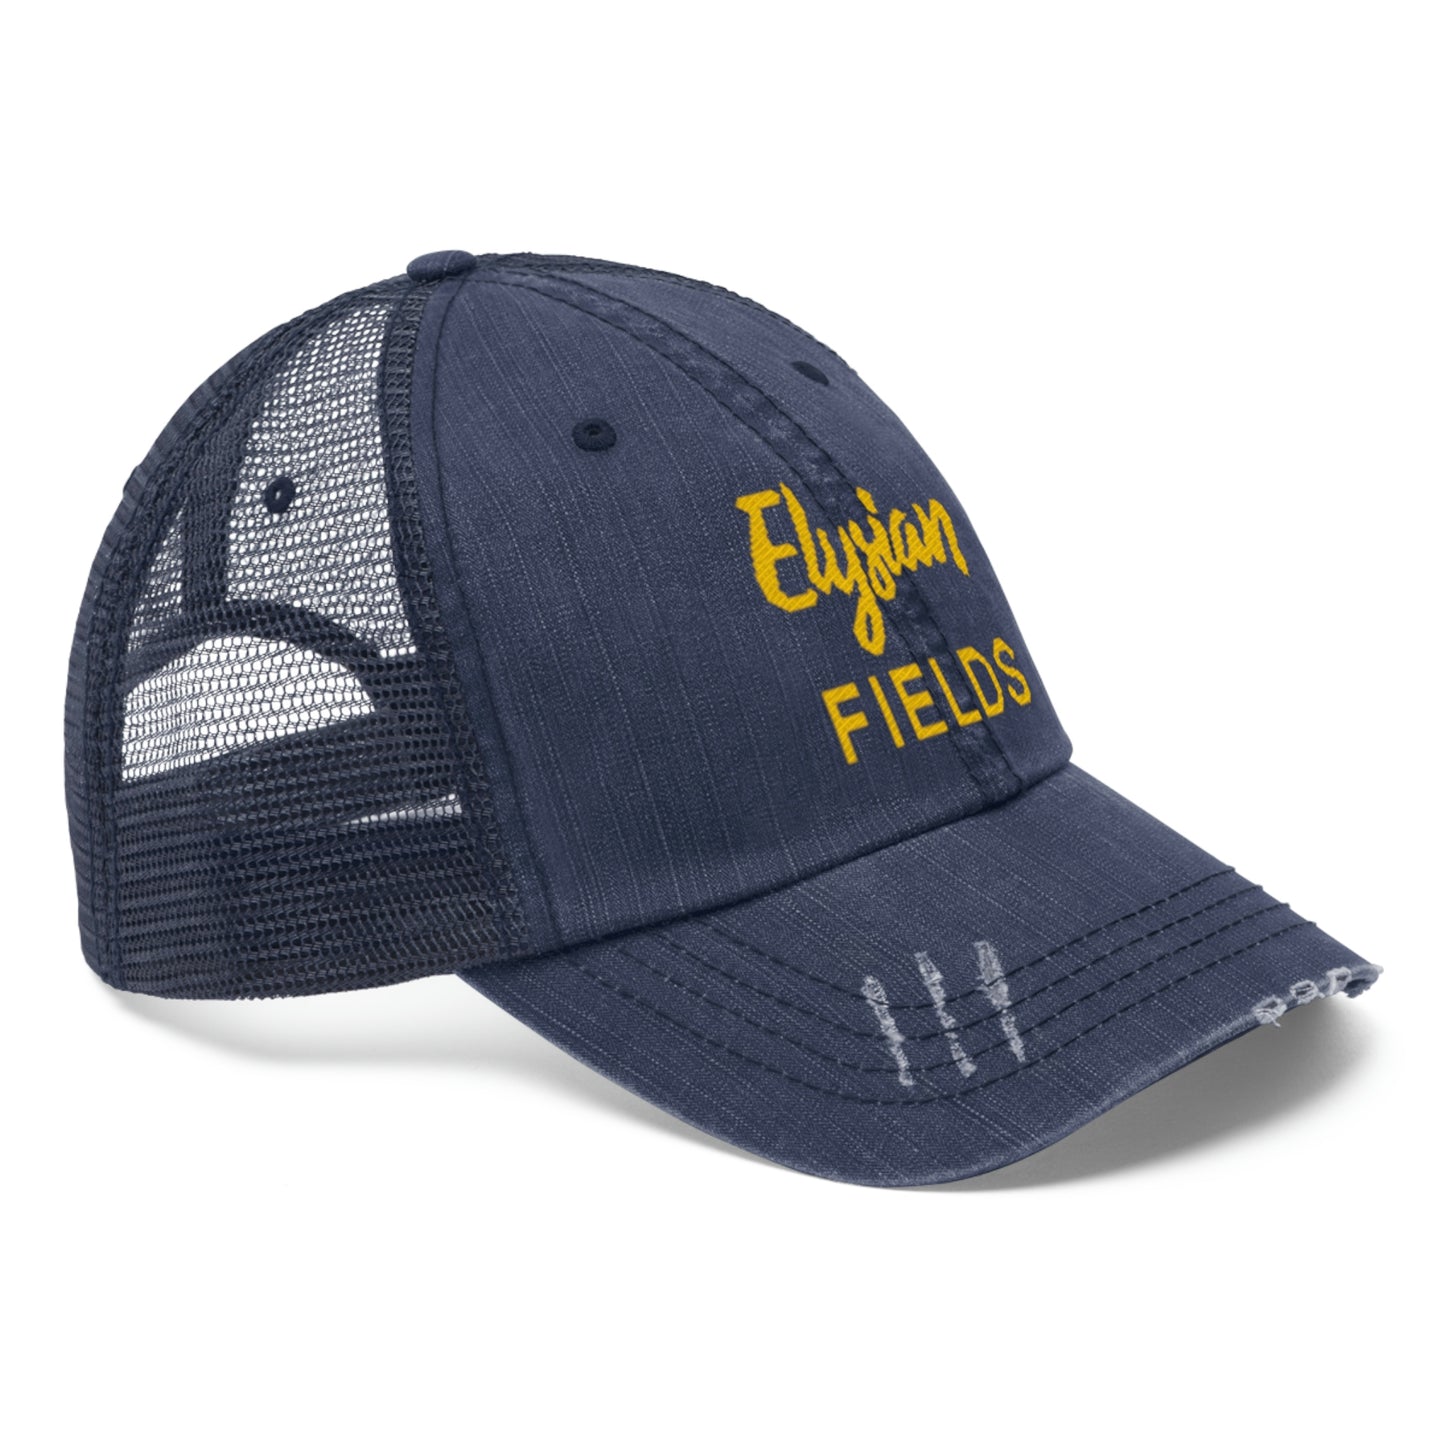 Elysian Fields - Unisex Trucker Hat